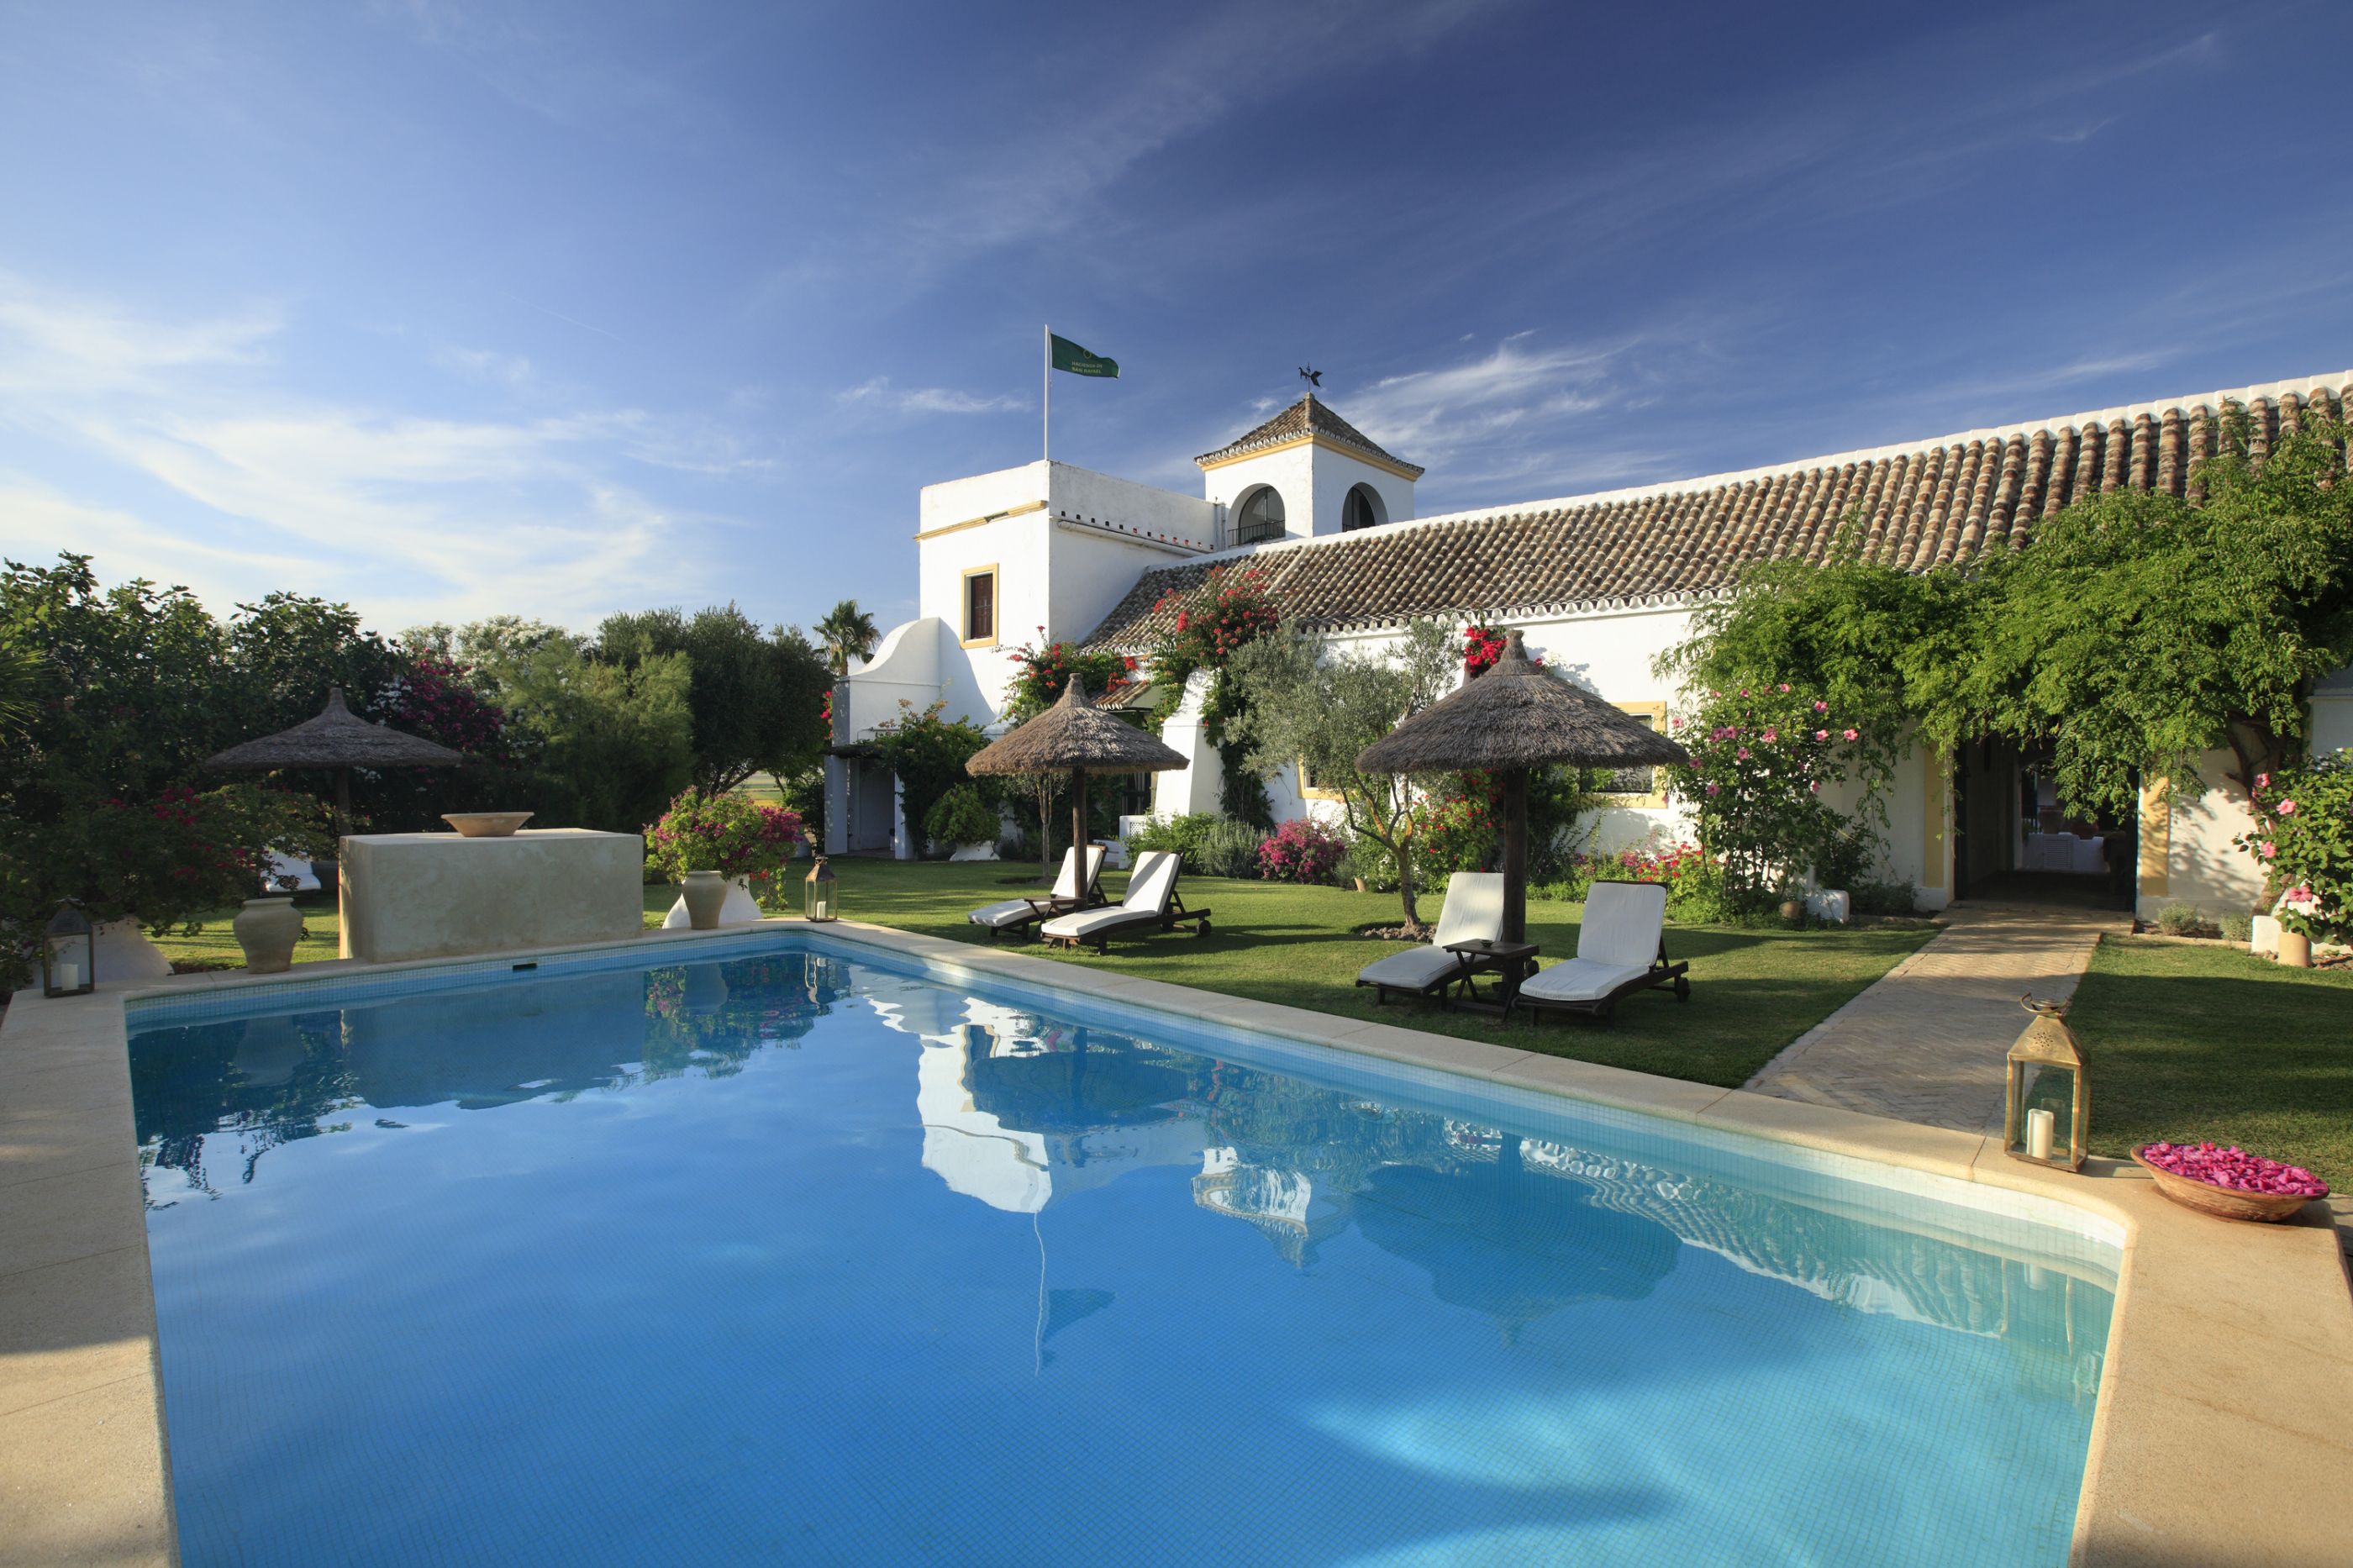 The swimming pool of Hacienda de San Rafael, Spain